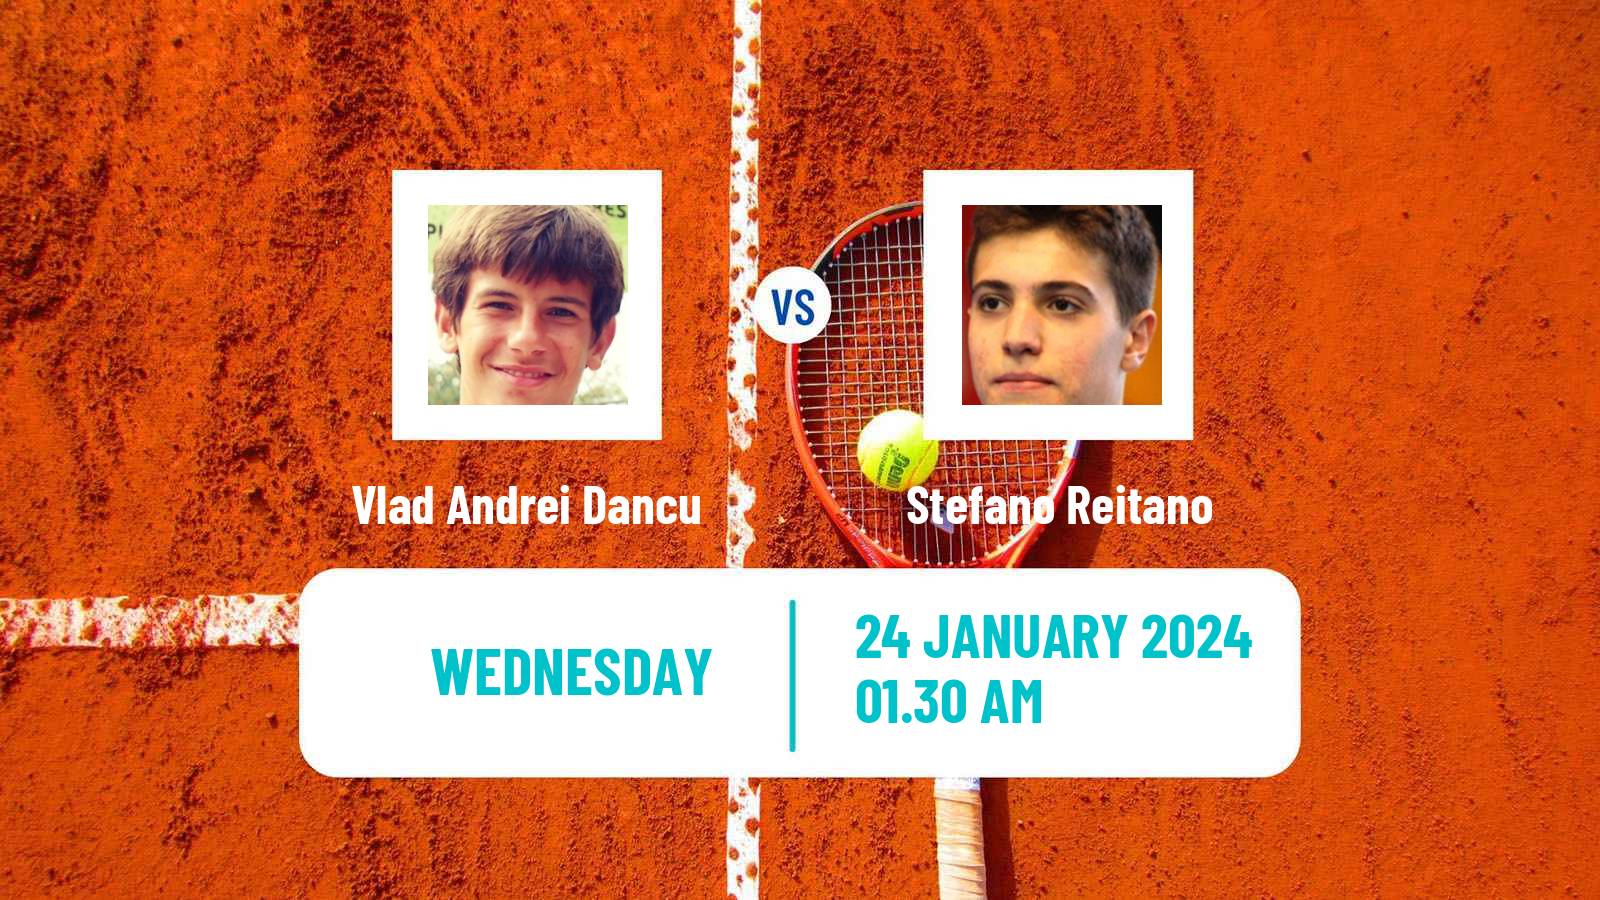 Tennis ITF M15 Antalya 3 Men Vlad Andrei Dancu - Stefano Reitano